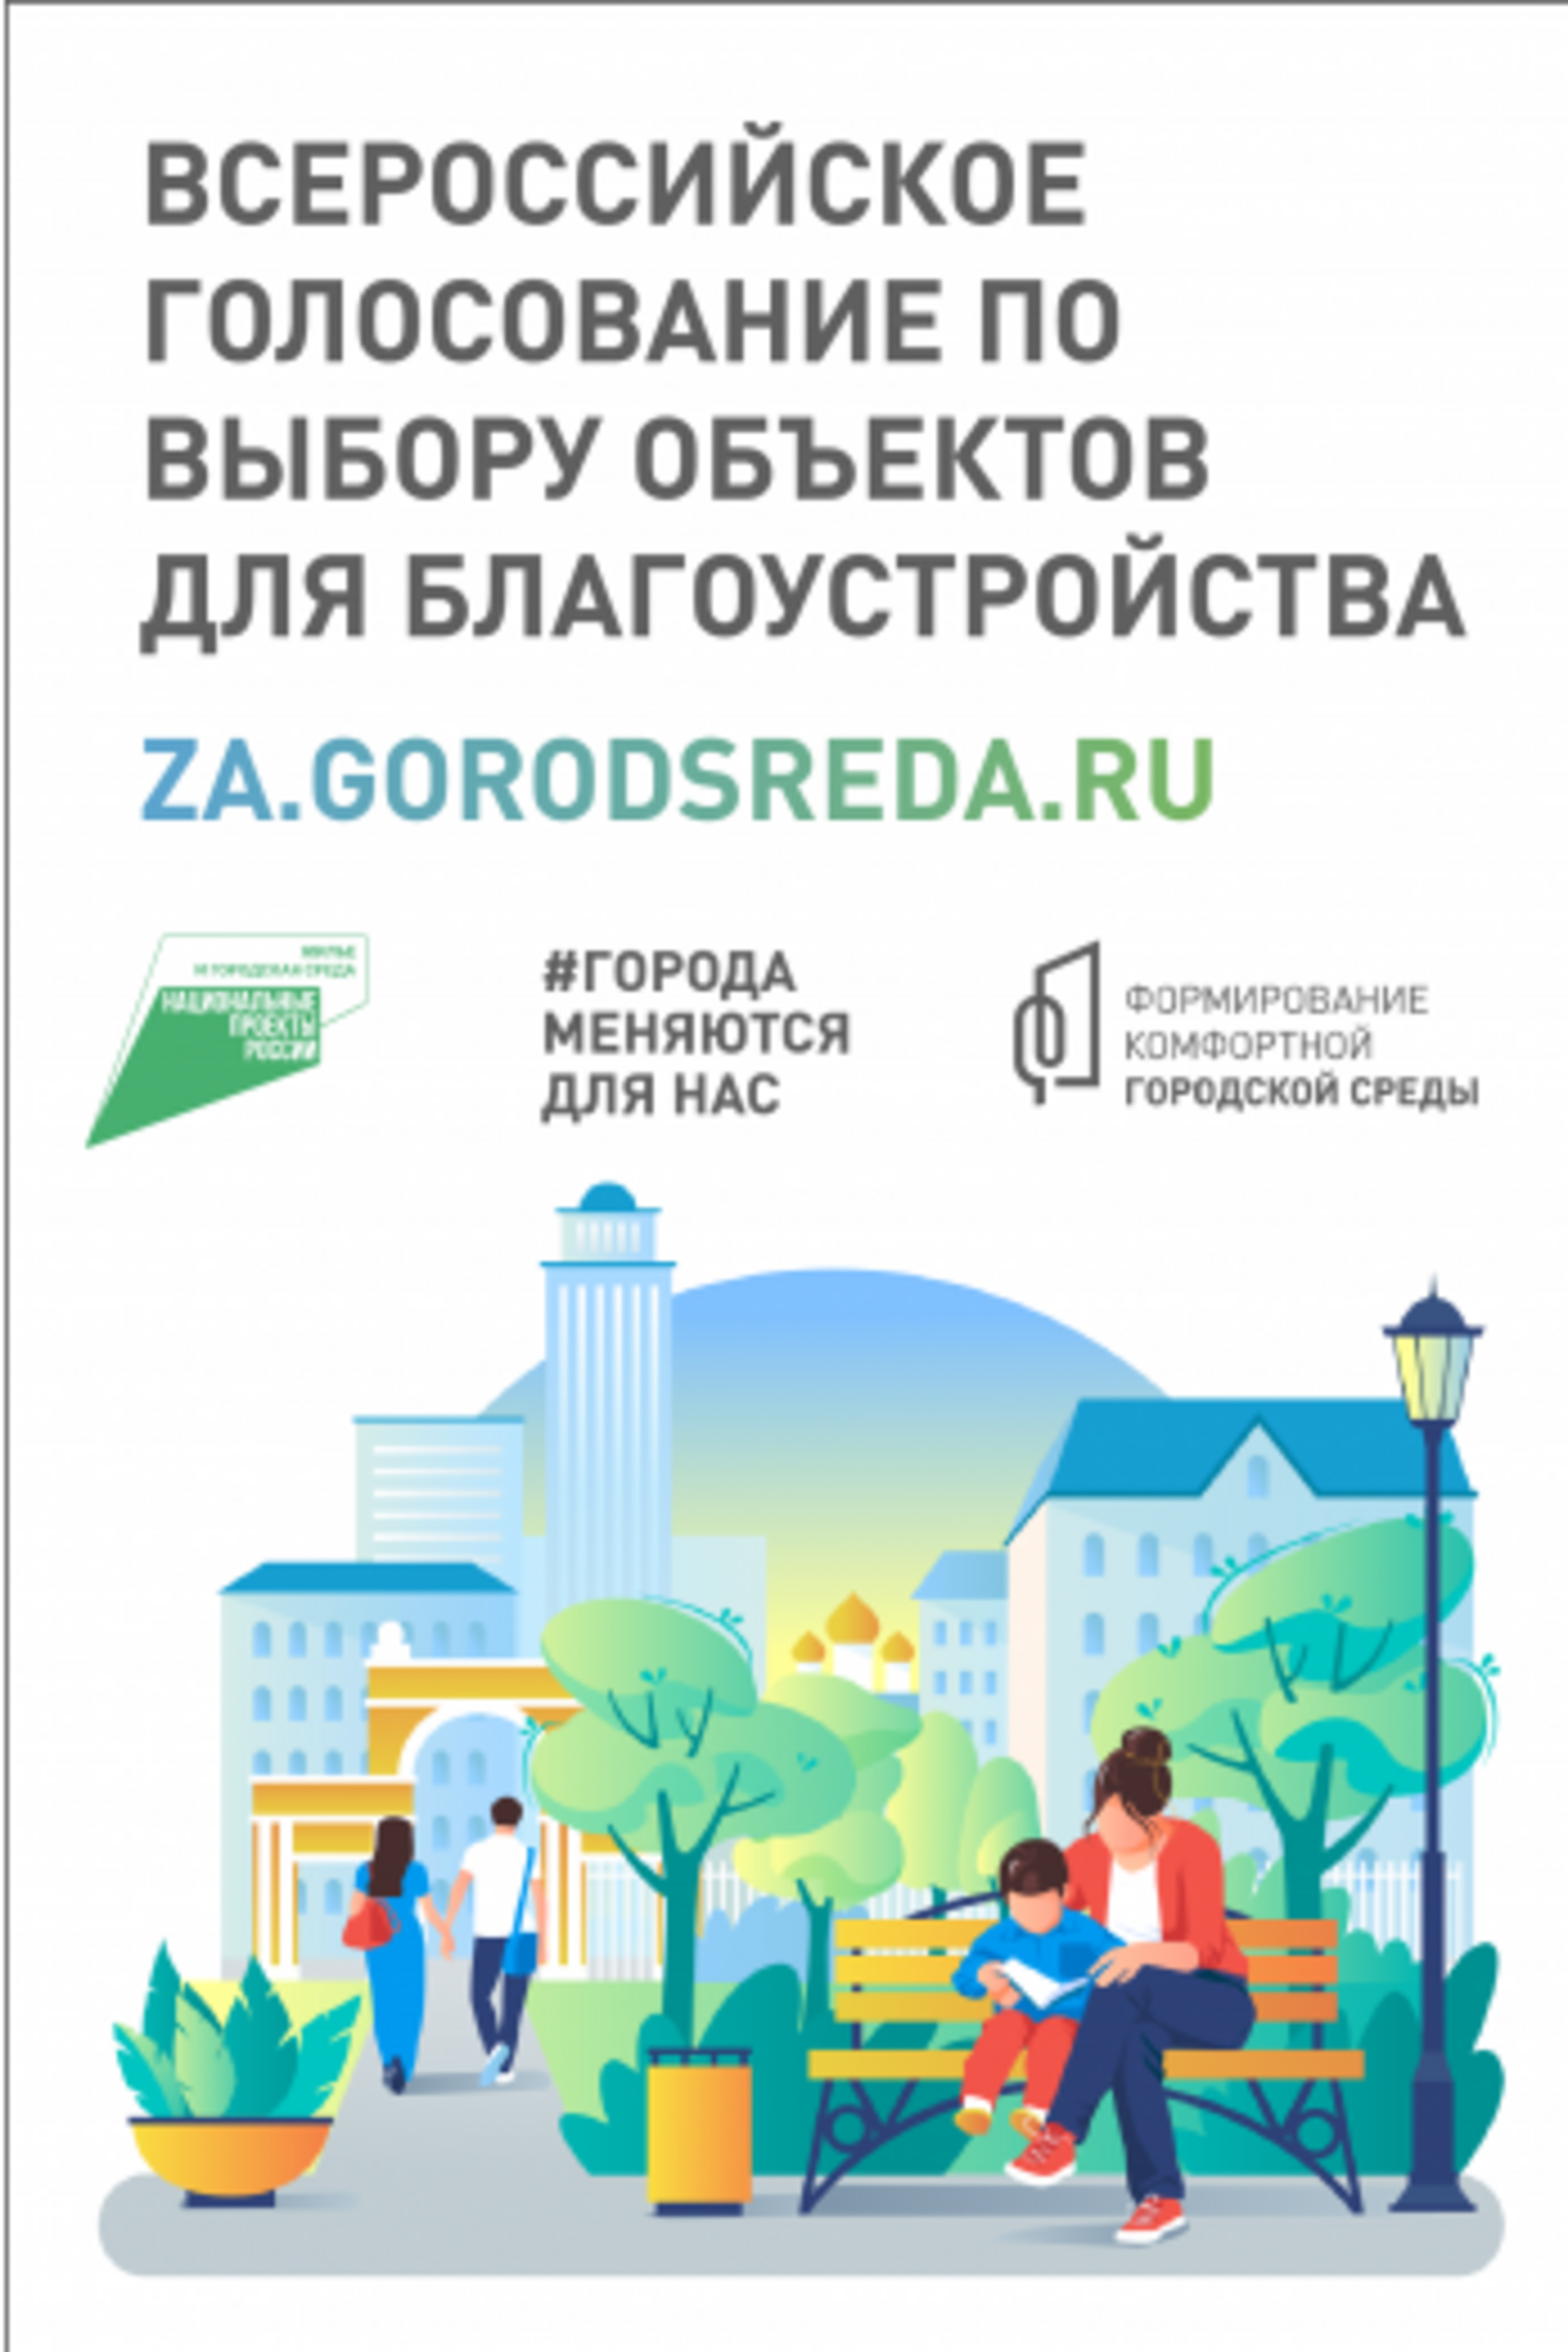 В Балтачевском районе пройдет Всероссийское онлайн-голосование по благоустройству территорий с 15 апреля по 30 мая